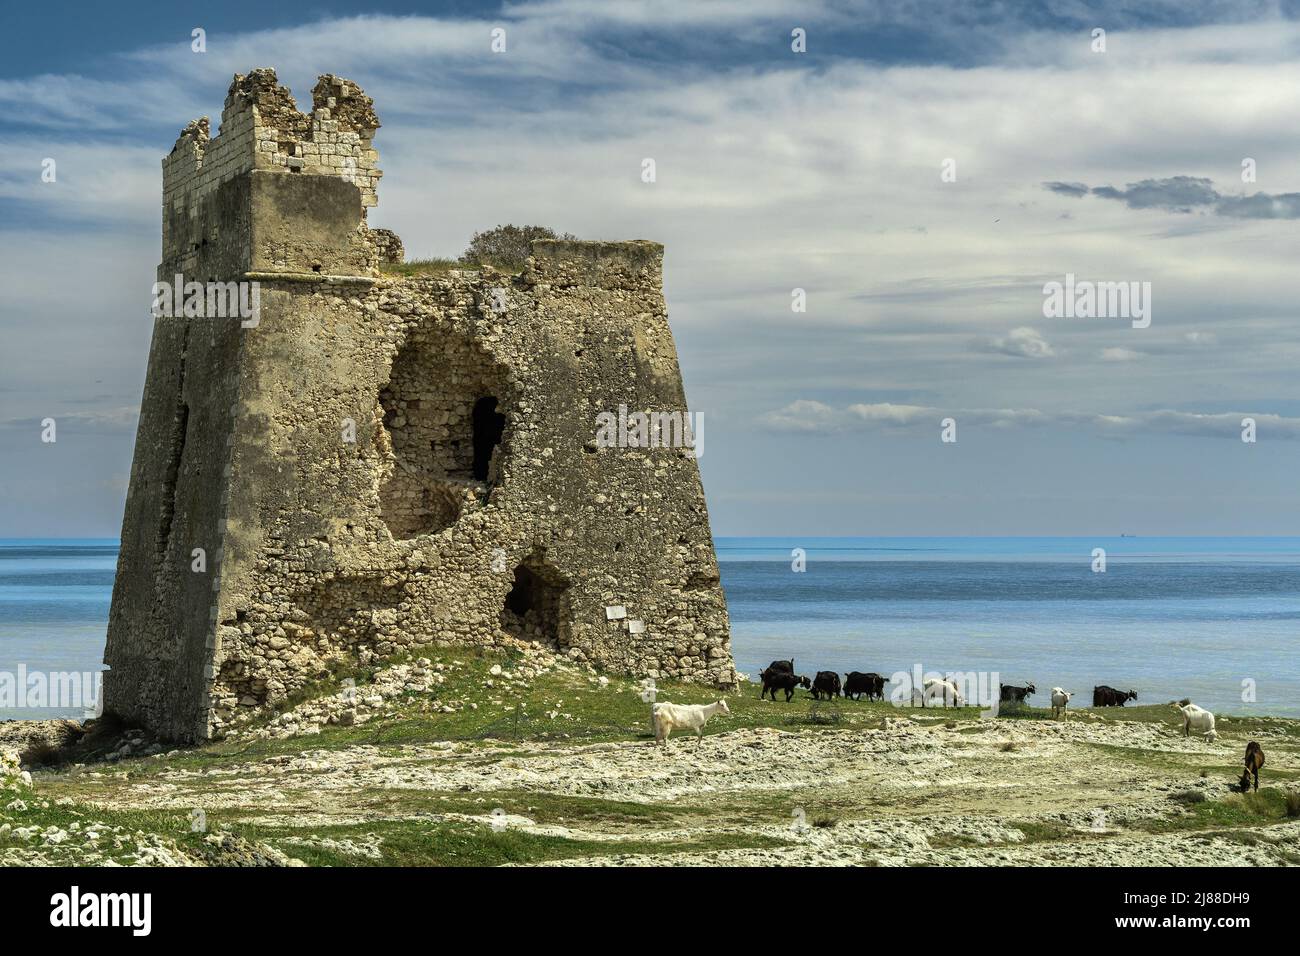 Der Torre di Sfinale ist ein küstennaher Turm, der sich auf einem Vorgebirge am nördlichen Ende der Bucht von Sfinale befindet. Gargano, Provinz Foggia, Italien, Apulien Stockfoto